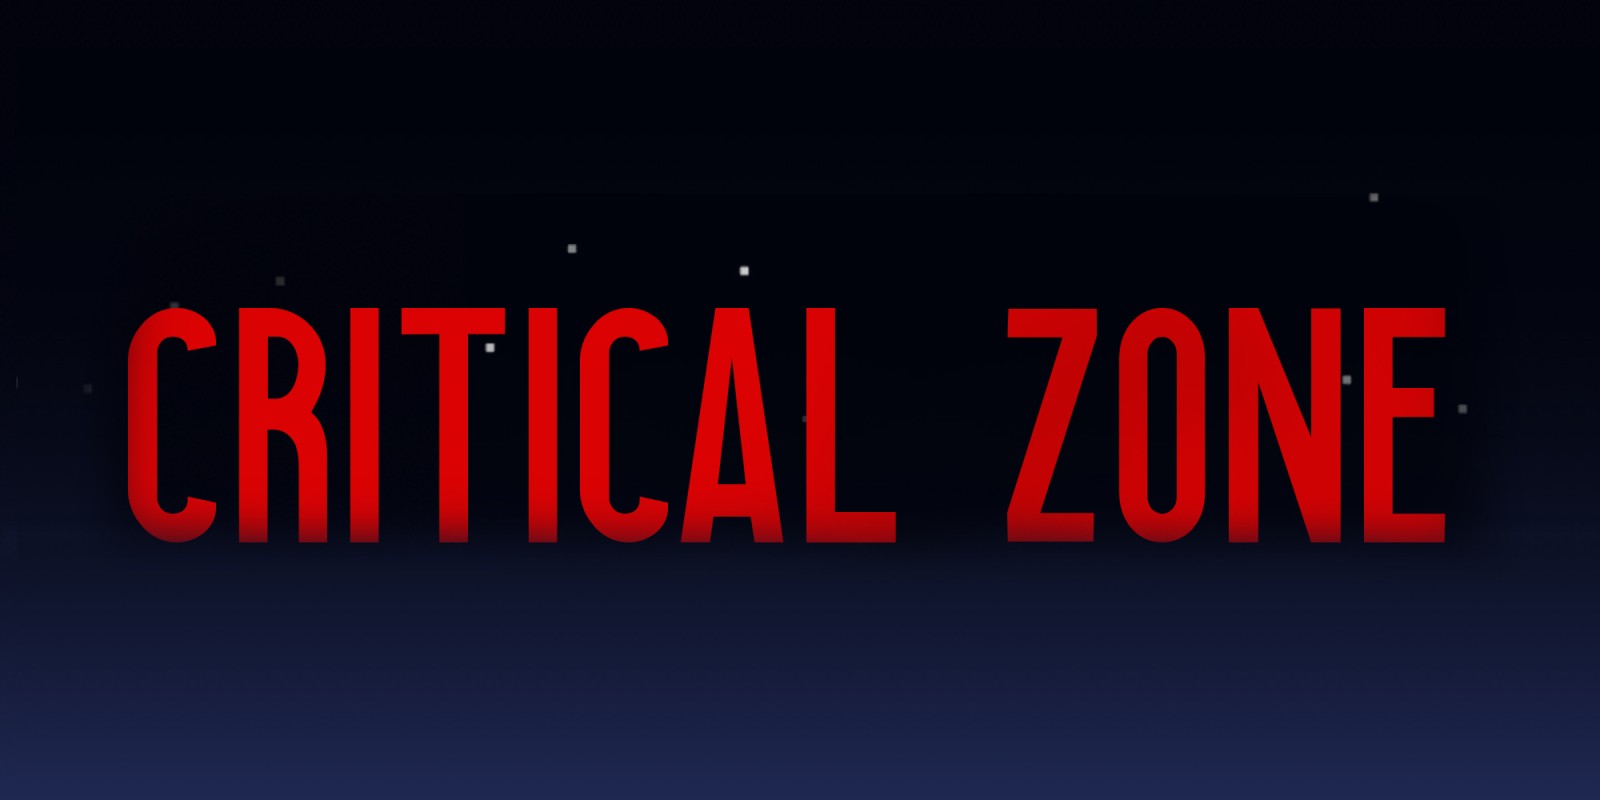 Critical Zone